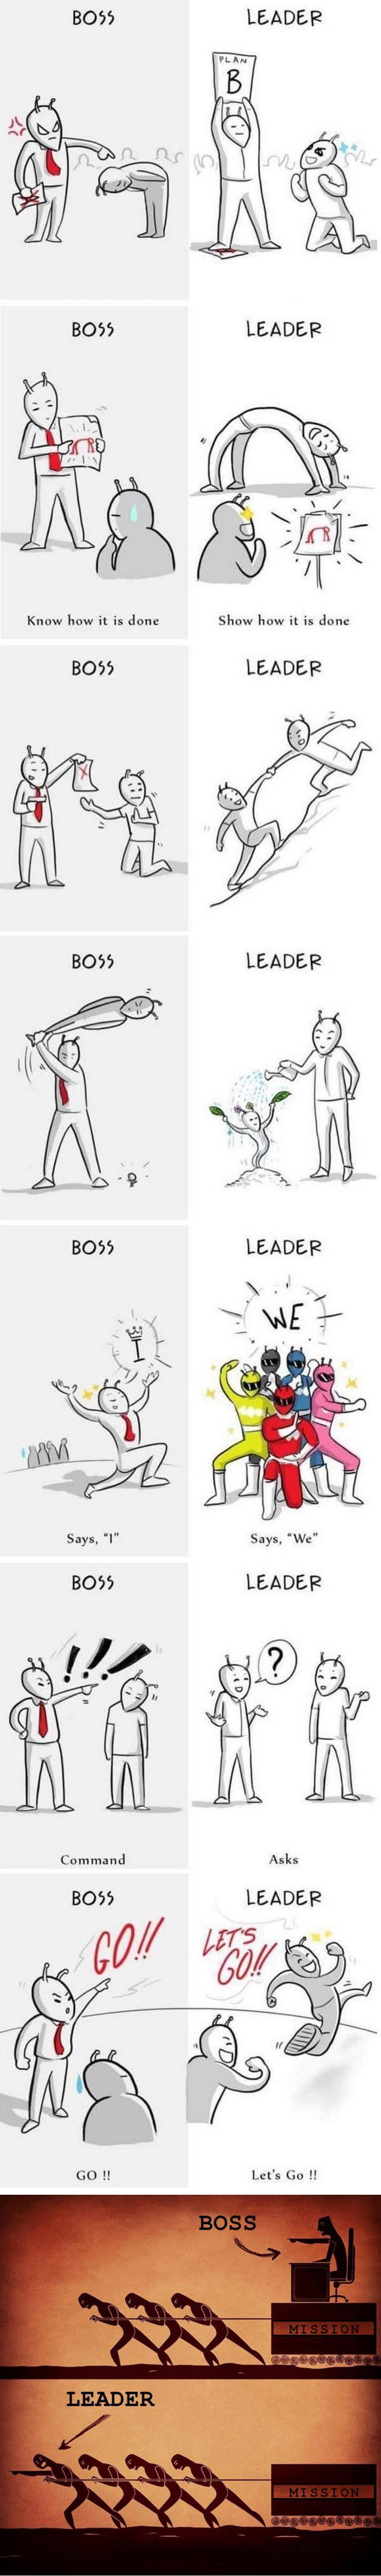 보스와 리더의 차이.png.jpg